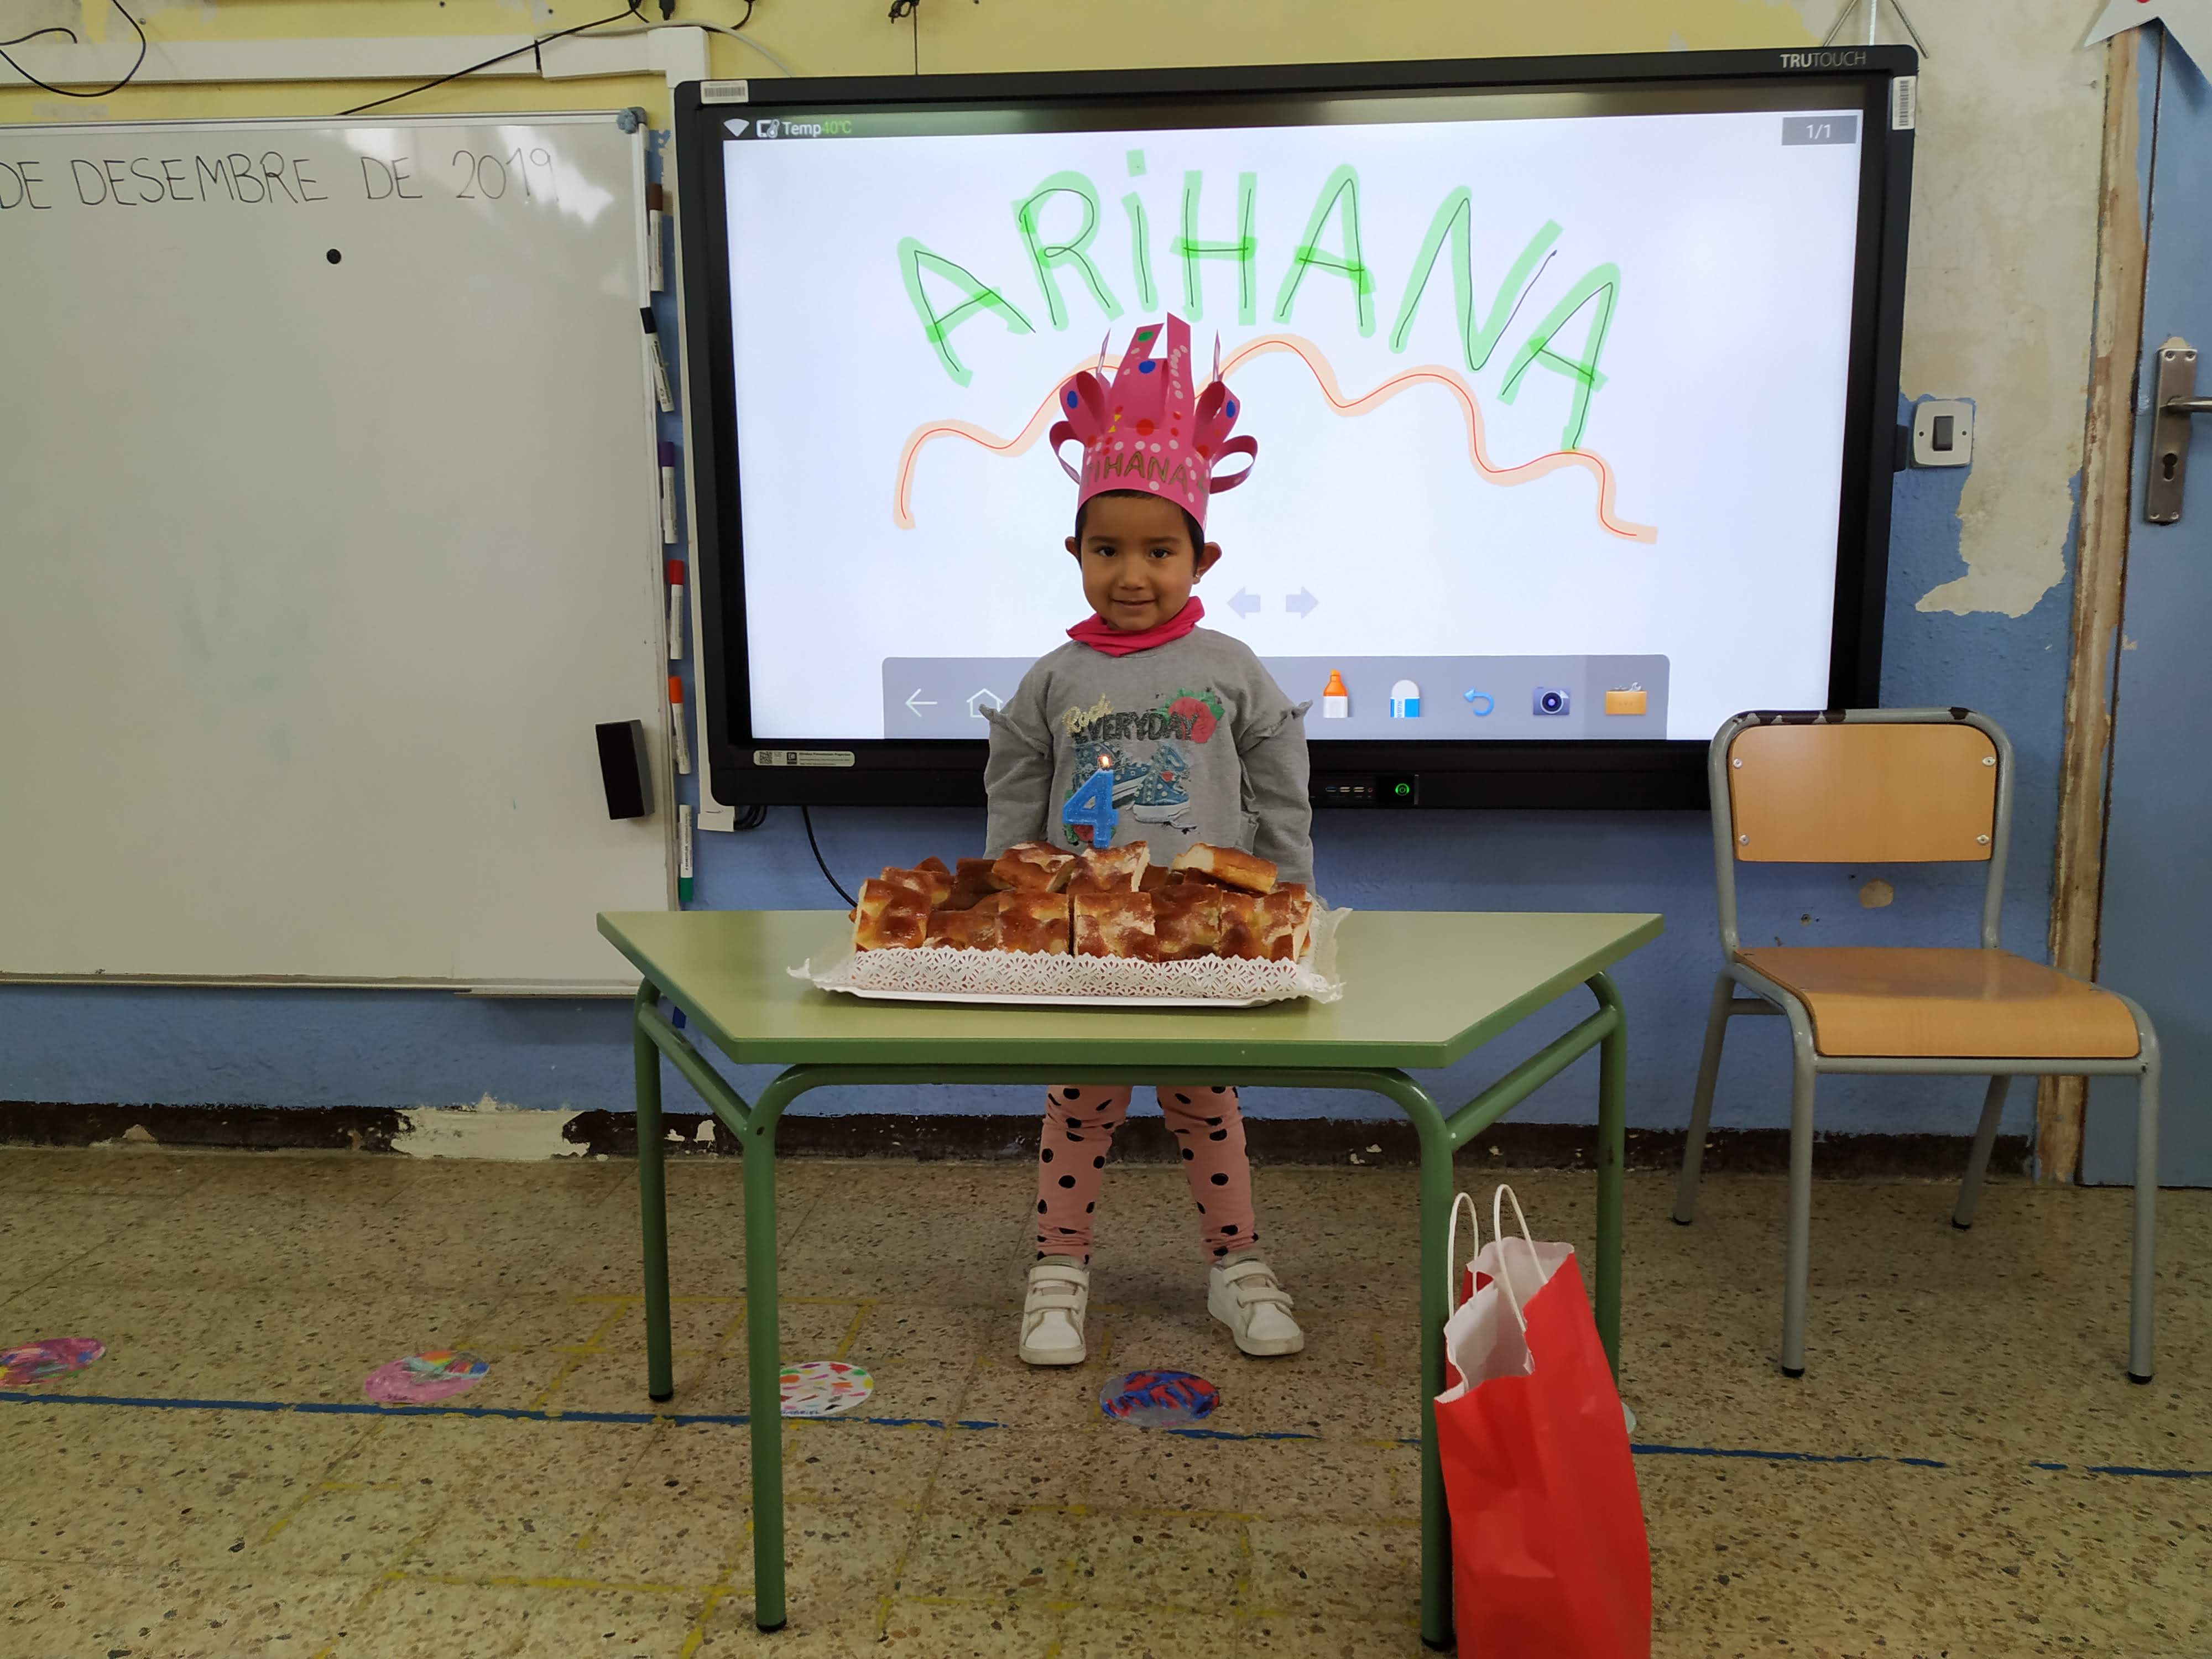 Felicitats, Arihana!